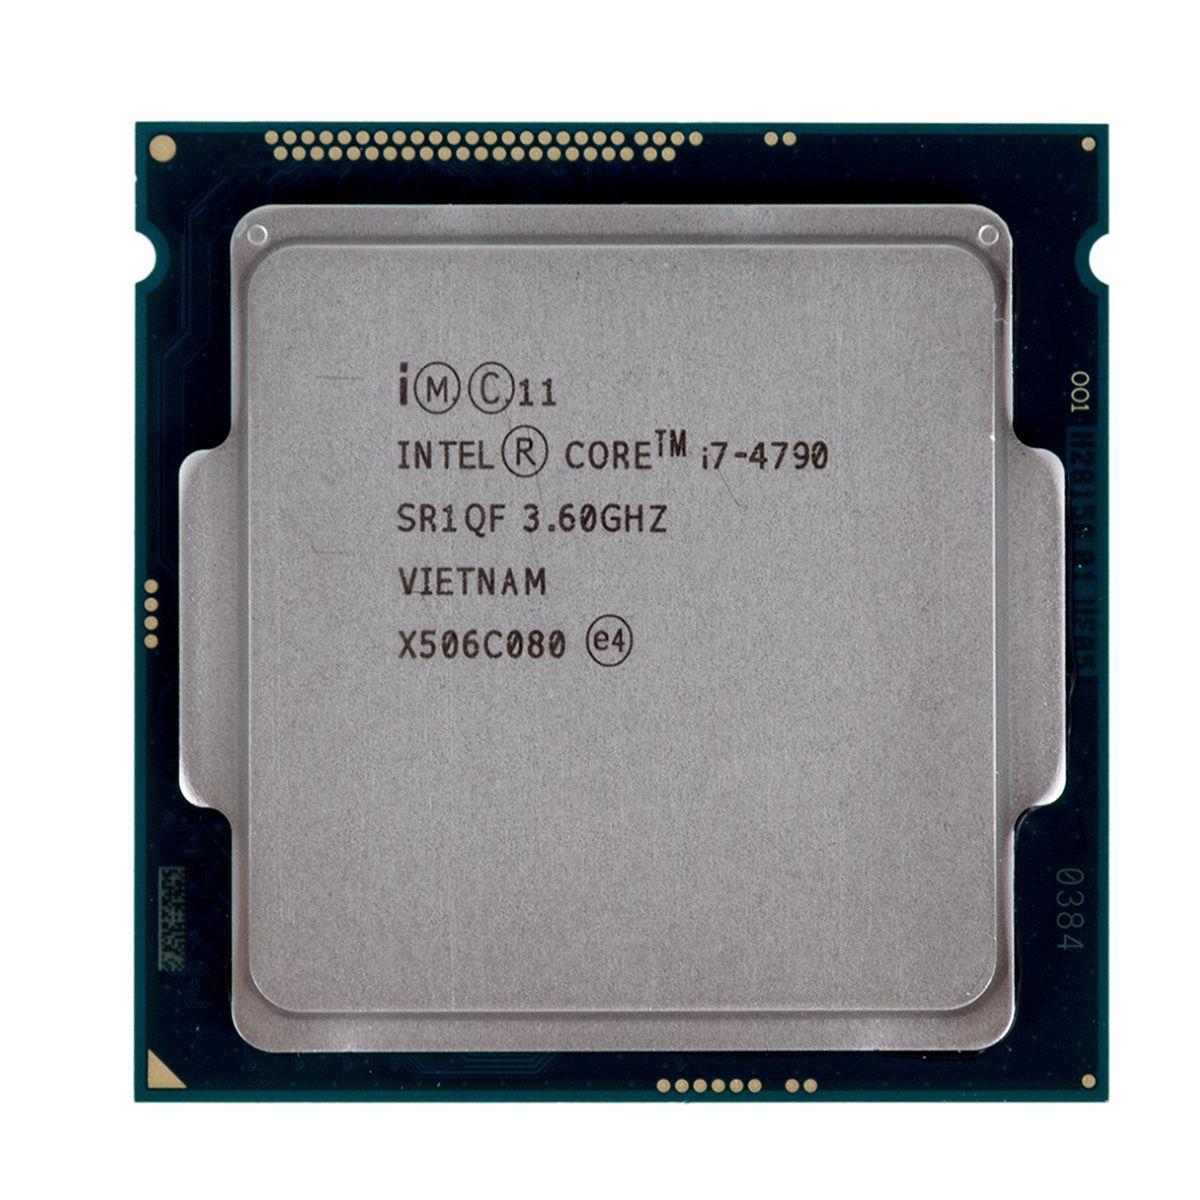 4770 сокет. Процессор Intel Pentium g3260. Celeron g1820. Intel Core i7-4770. Intel Celeron 2.8 GHZ.